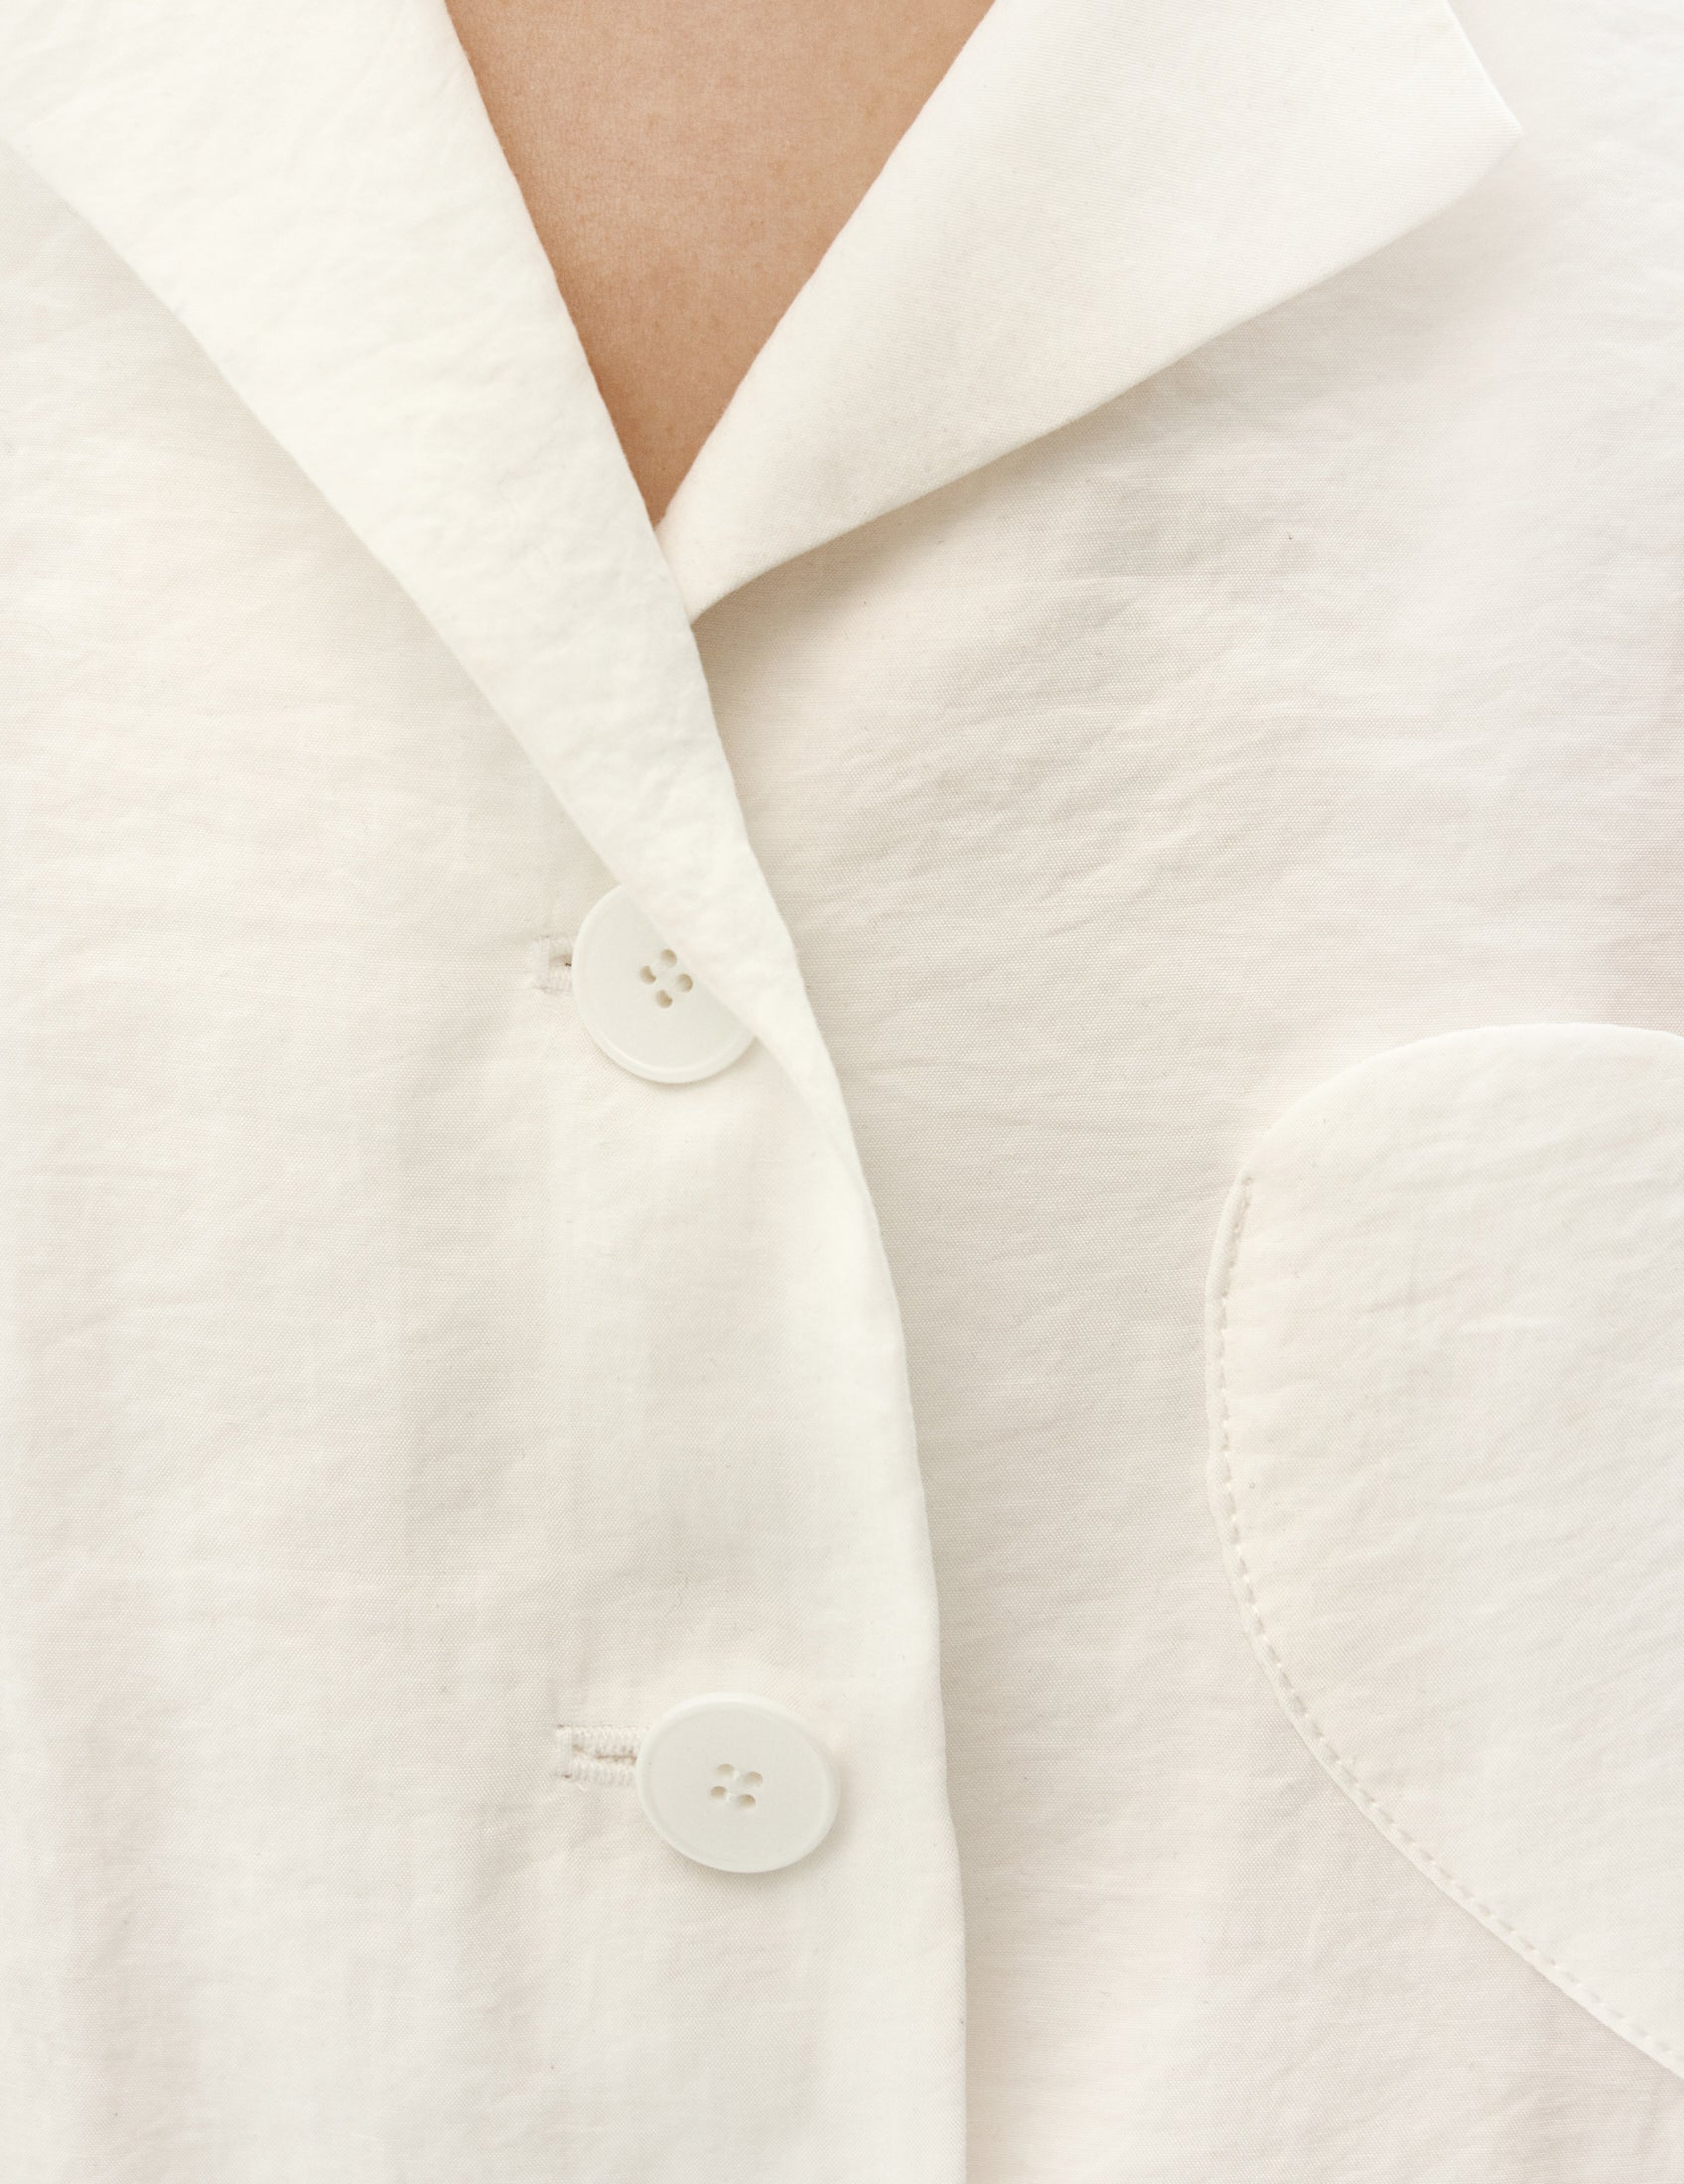 shirt with heart pocket detail from forma brand. Біла сорочка із жатої вискози з коротким рукавом на карманом у вигляді серця від бренду форма